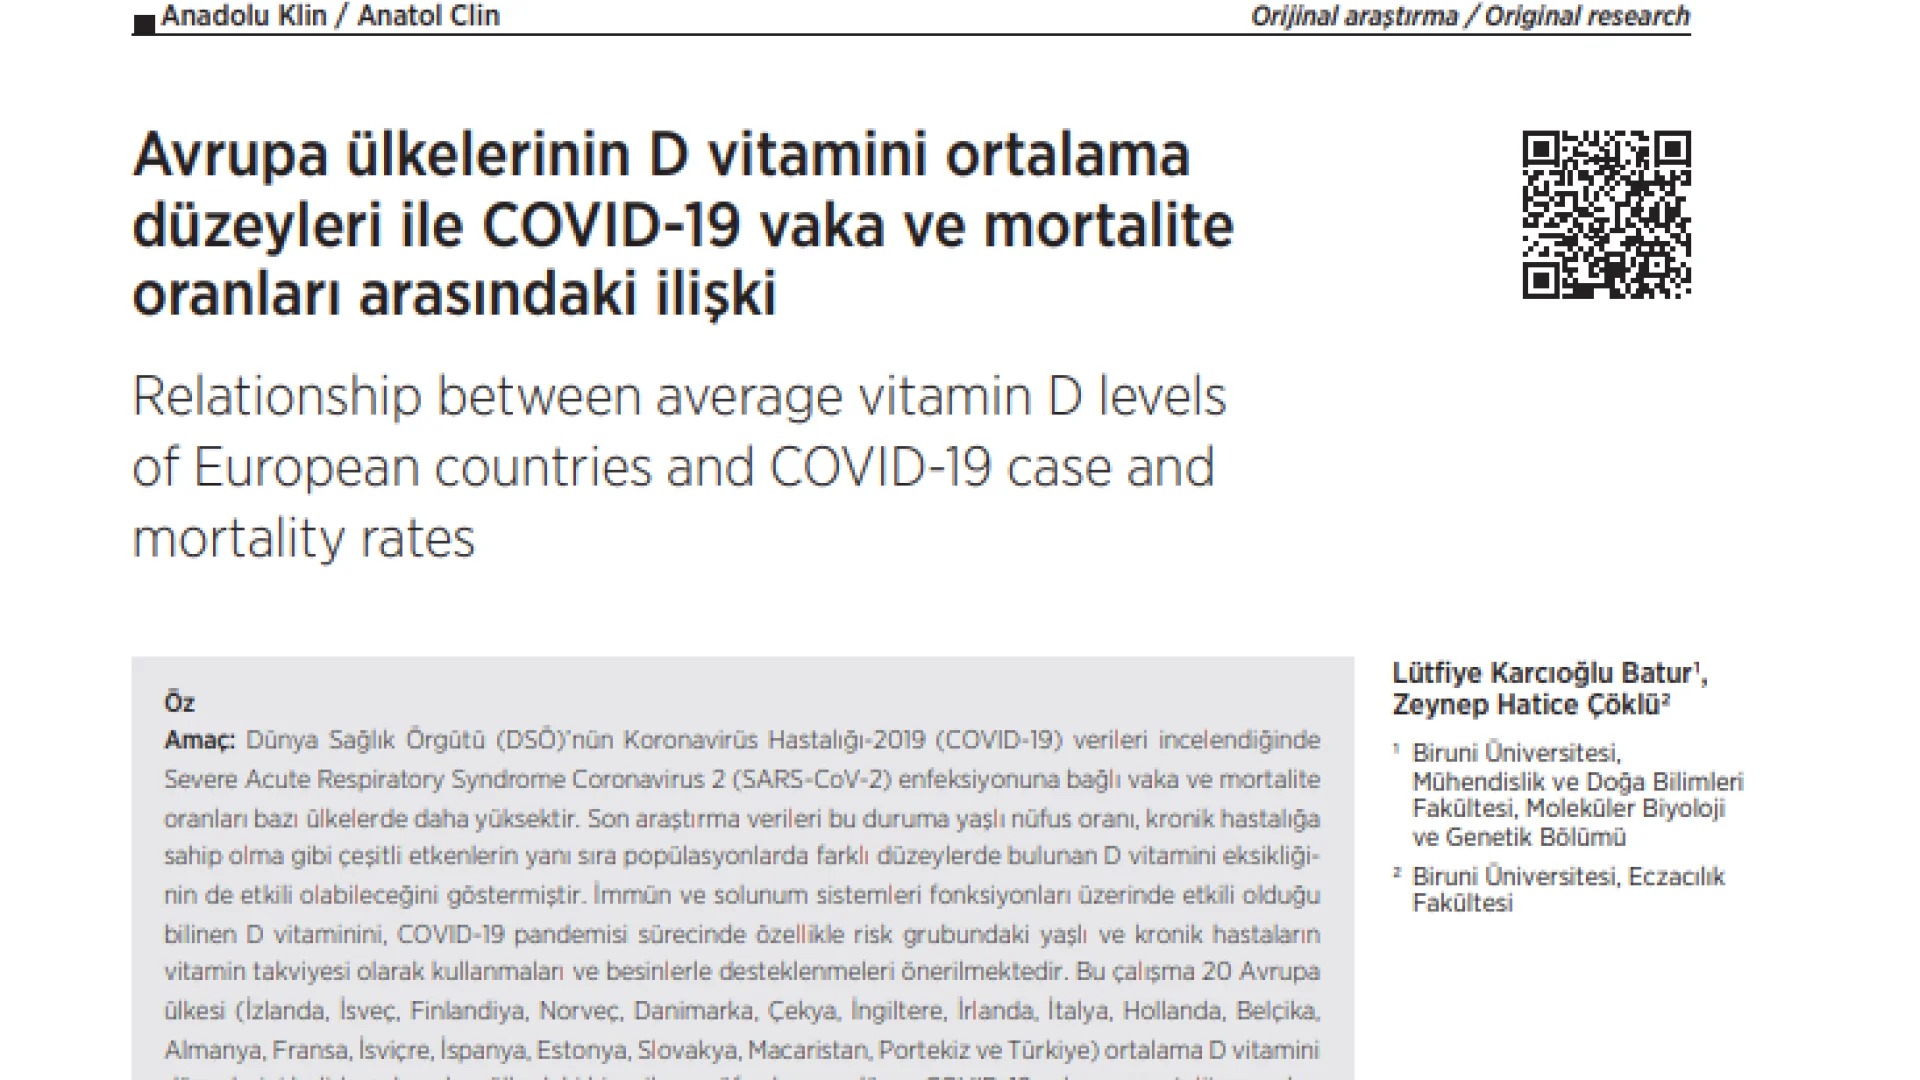 Avrupa ülkelerinin D vitamini ortalama düzeyleri ile COVID-19 vaka ve mortalite oranları arasındaki ilişki